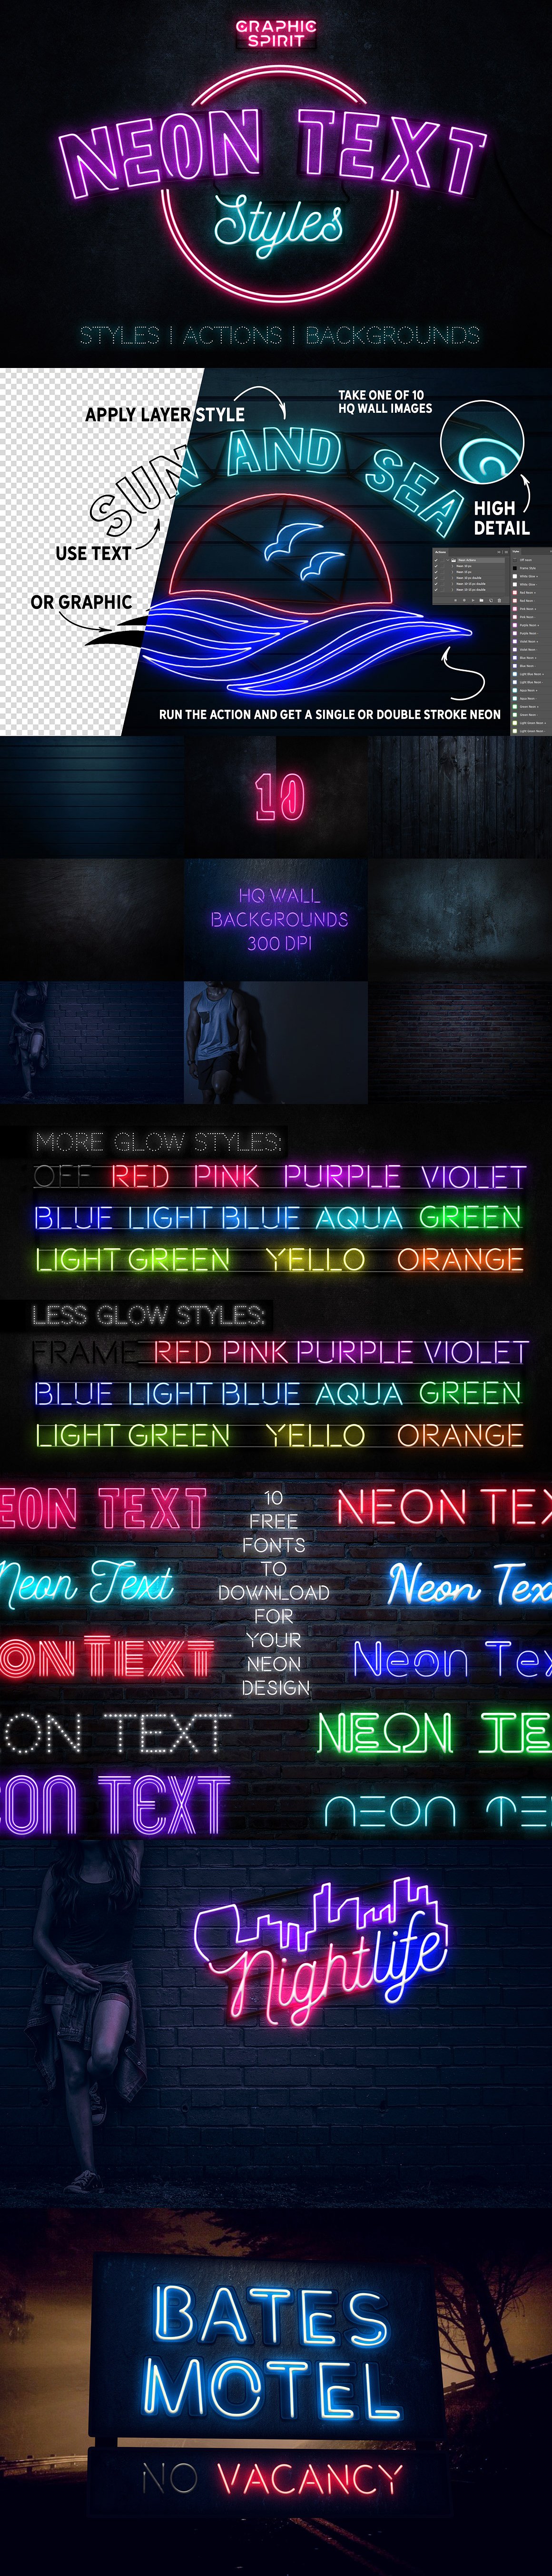 霓虹文字图层样式 Neon Text Layer Styles Extras插图